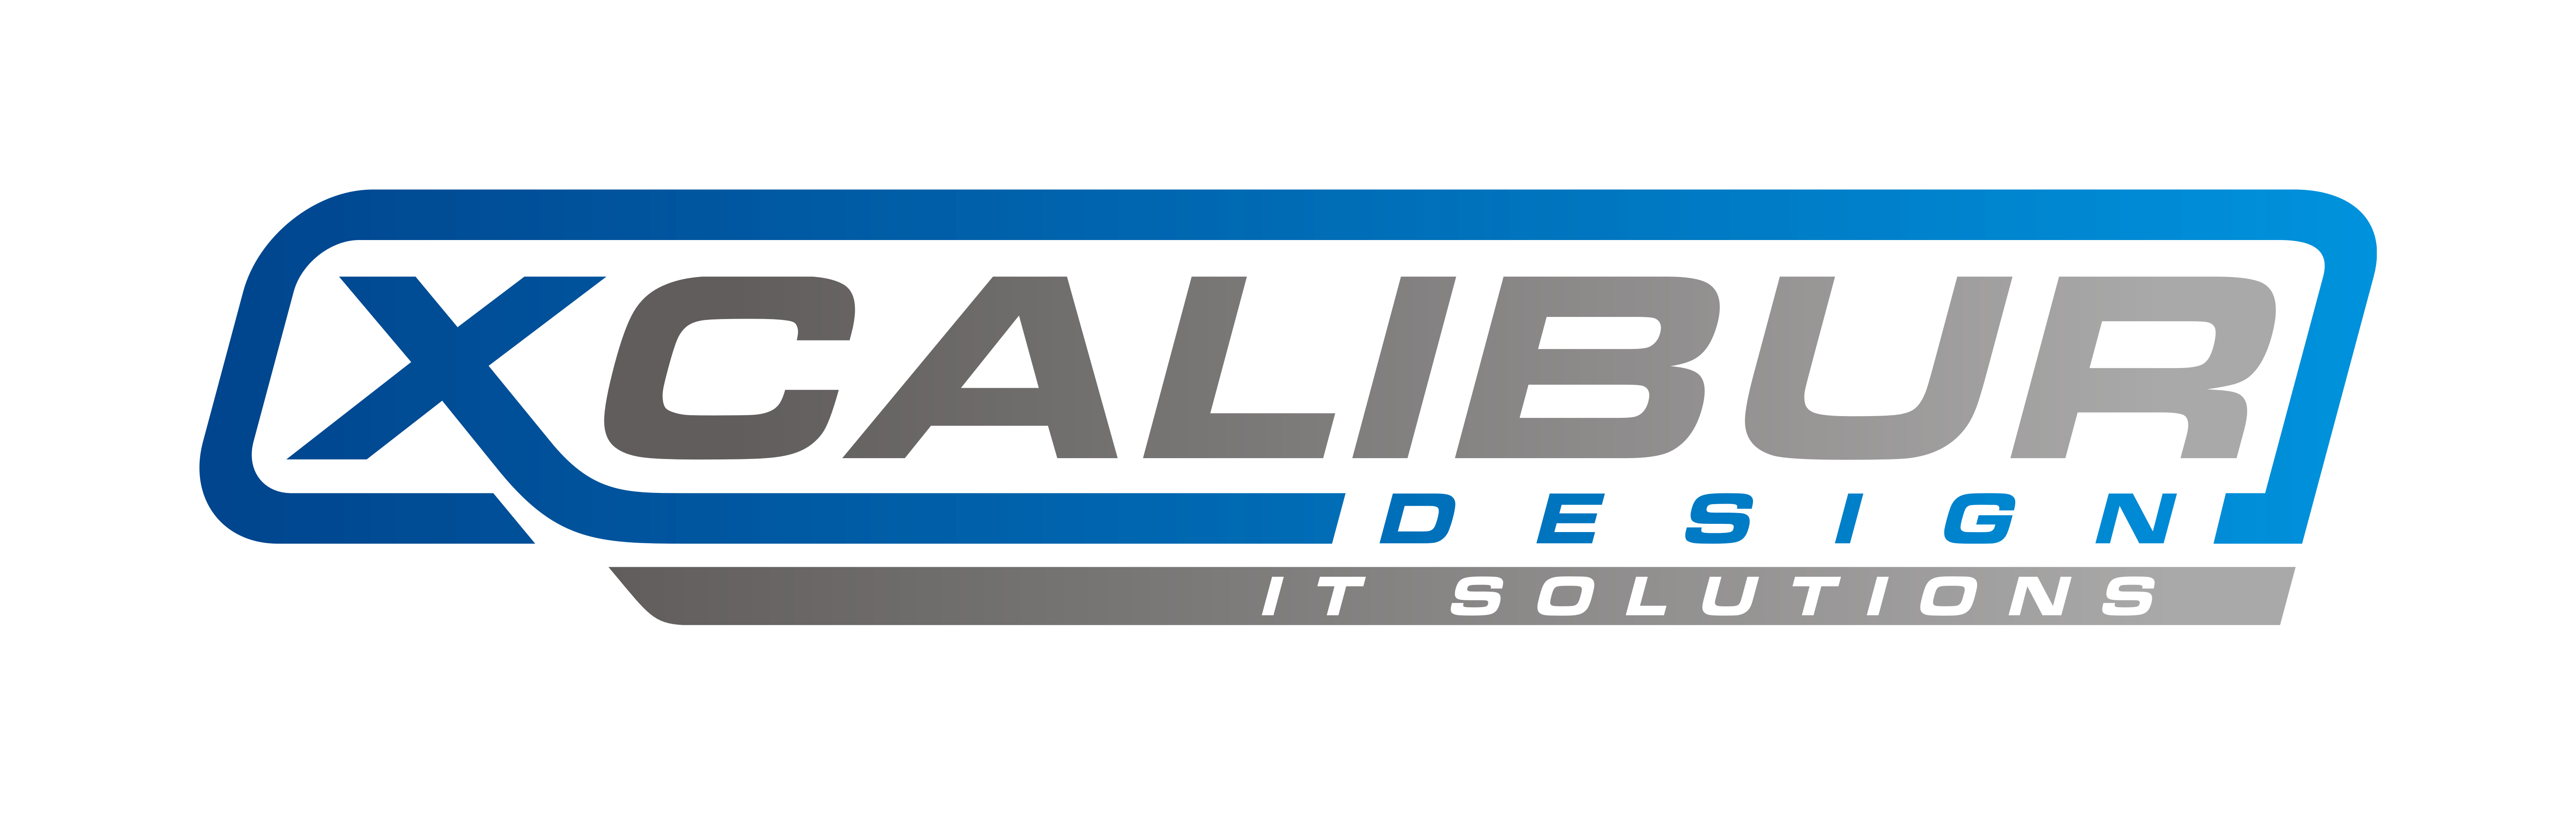 Xcalibur Design